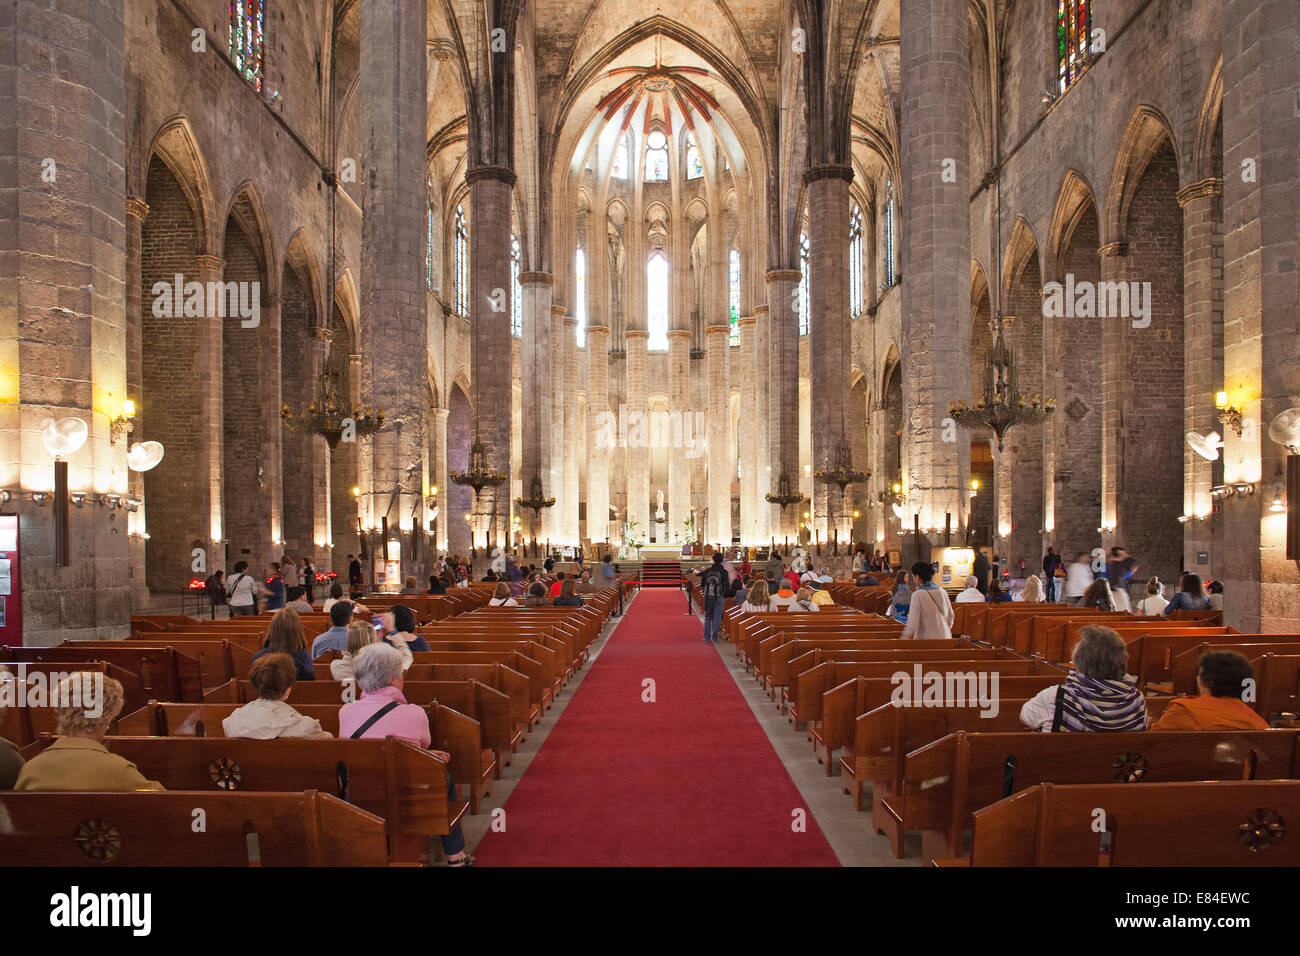 Innenraum der Basilika von Santa Maria del Mar in Barcelona, Katalonien, Spanien. Katalanisch-gotischen Architektur, stammt aus der Stockfoto